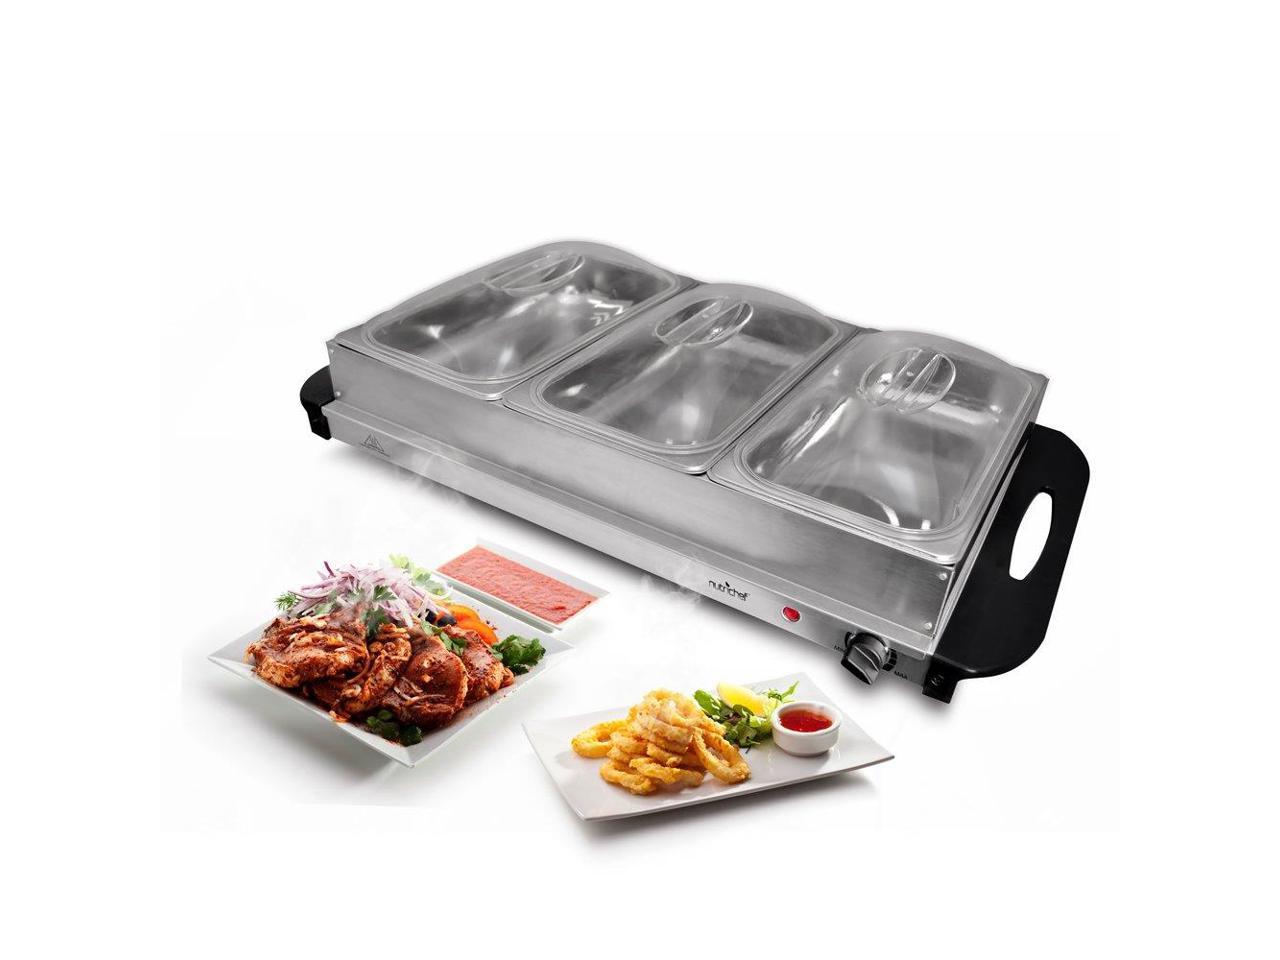 NutriChef PKBFWM33 Food Warming Tray Buffet Server Hot Plate Warmer 